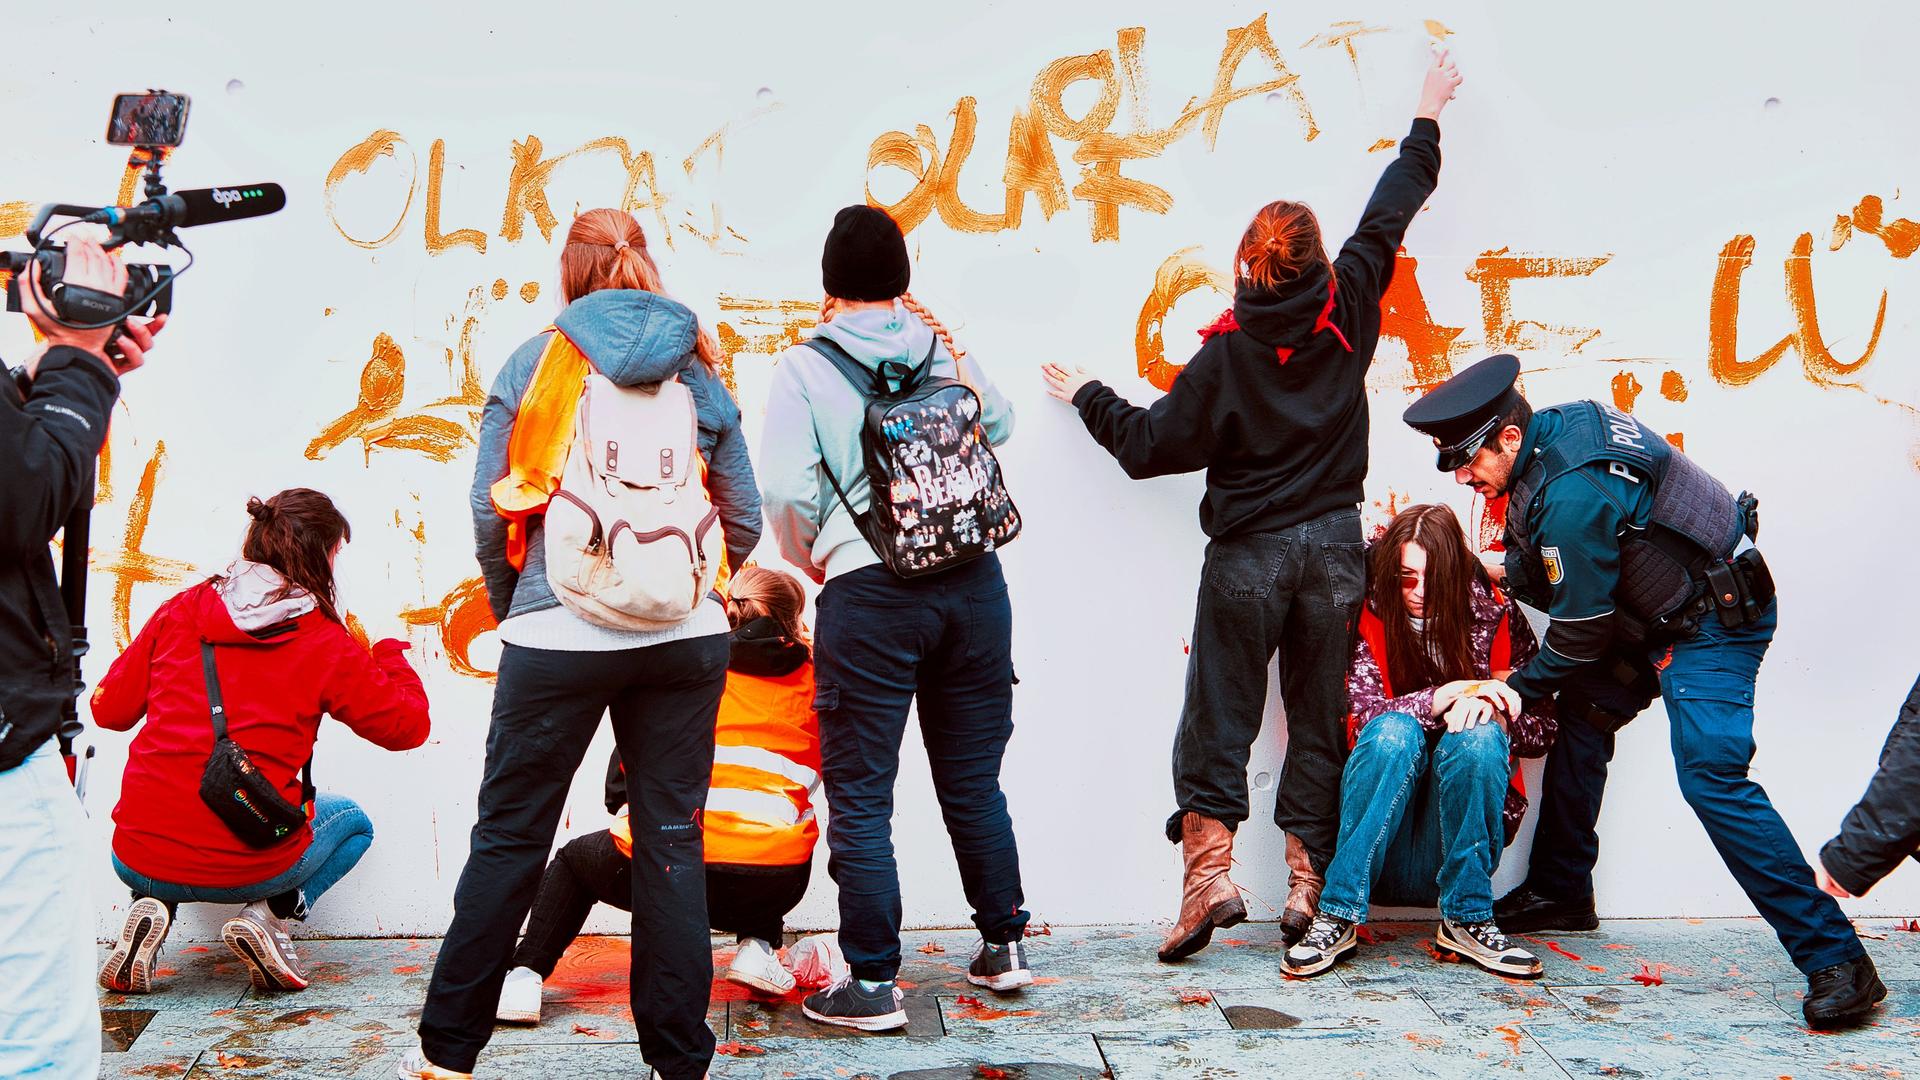 Aktivisten der Gruppe Letzte Generation werden vor dem Kanzleramt von Polizeibeamten gestoppt. Zuvor hatten sie eine Wand des Kanzleramtes mit dem Spruch "Olaf lügt" bemalt.